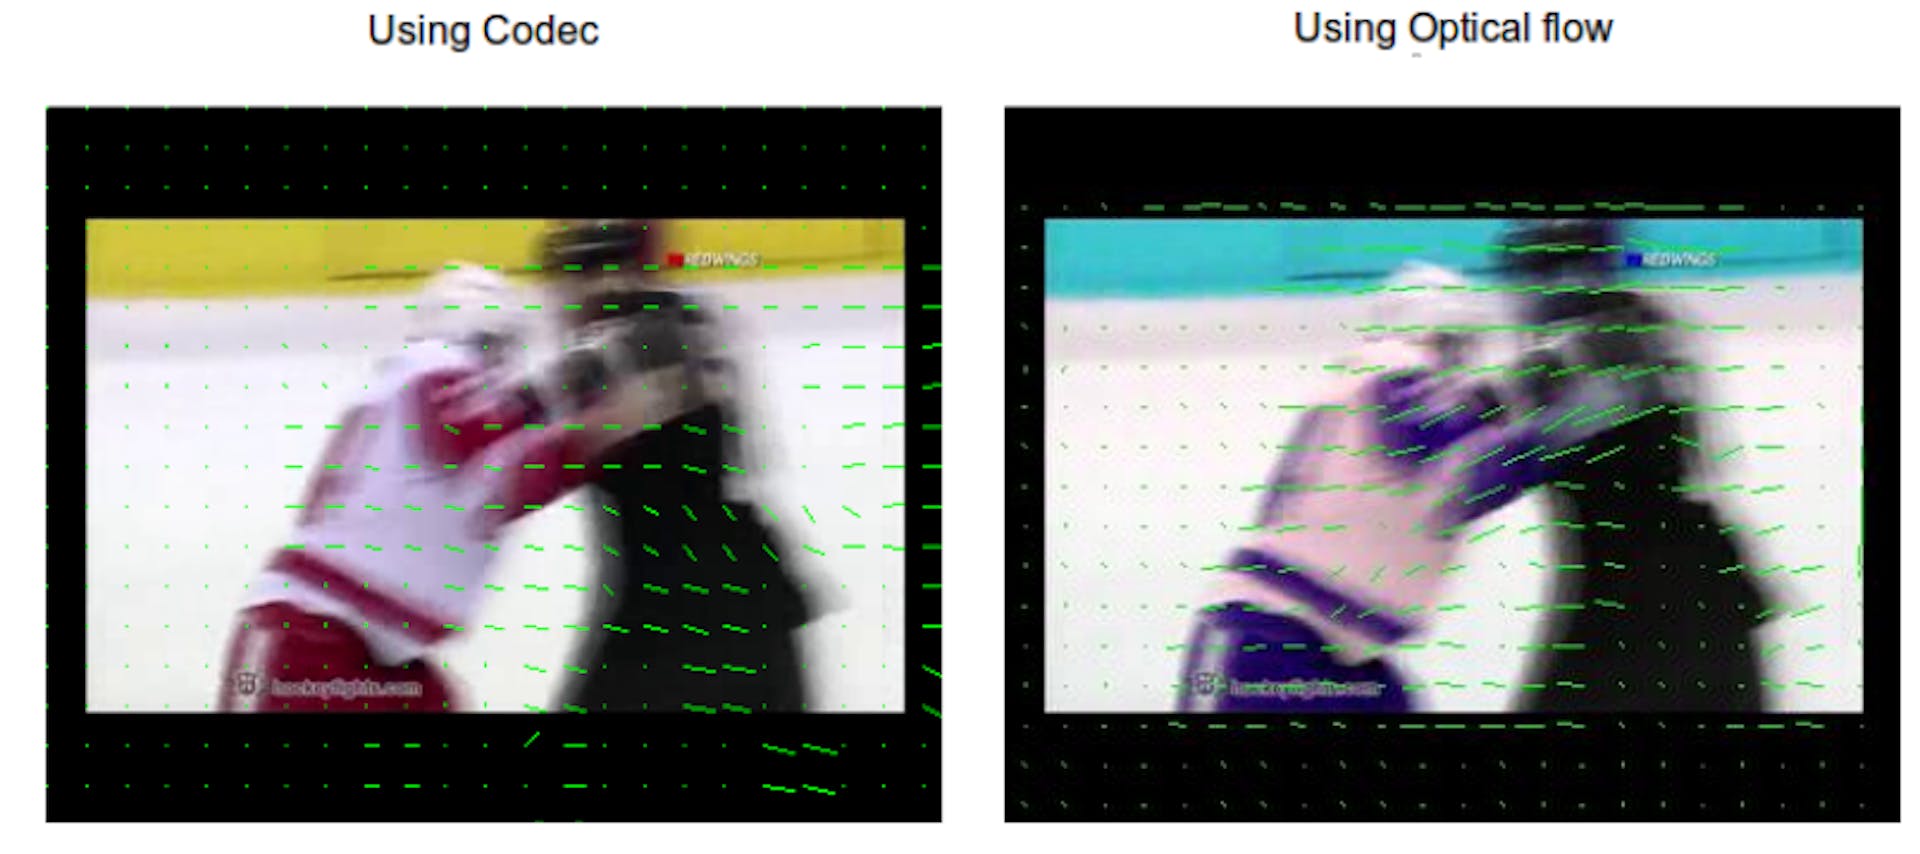 Figura 3.5: Información de movimiento de fotogramas extraídos mediante códec frente a flujo óptico.